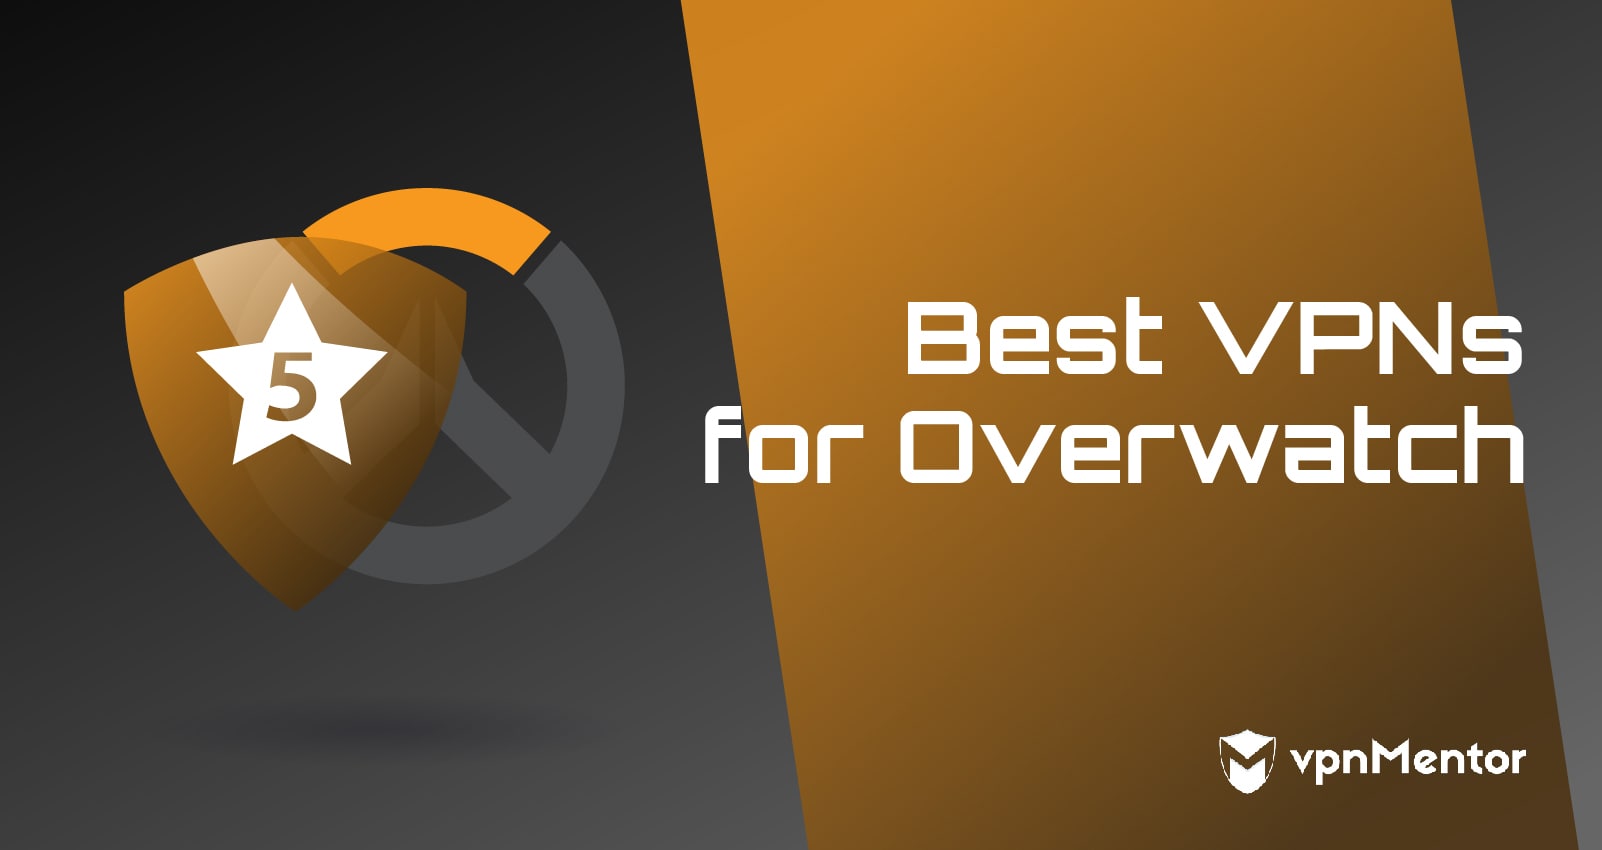 Best VPNs for Overwatch